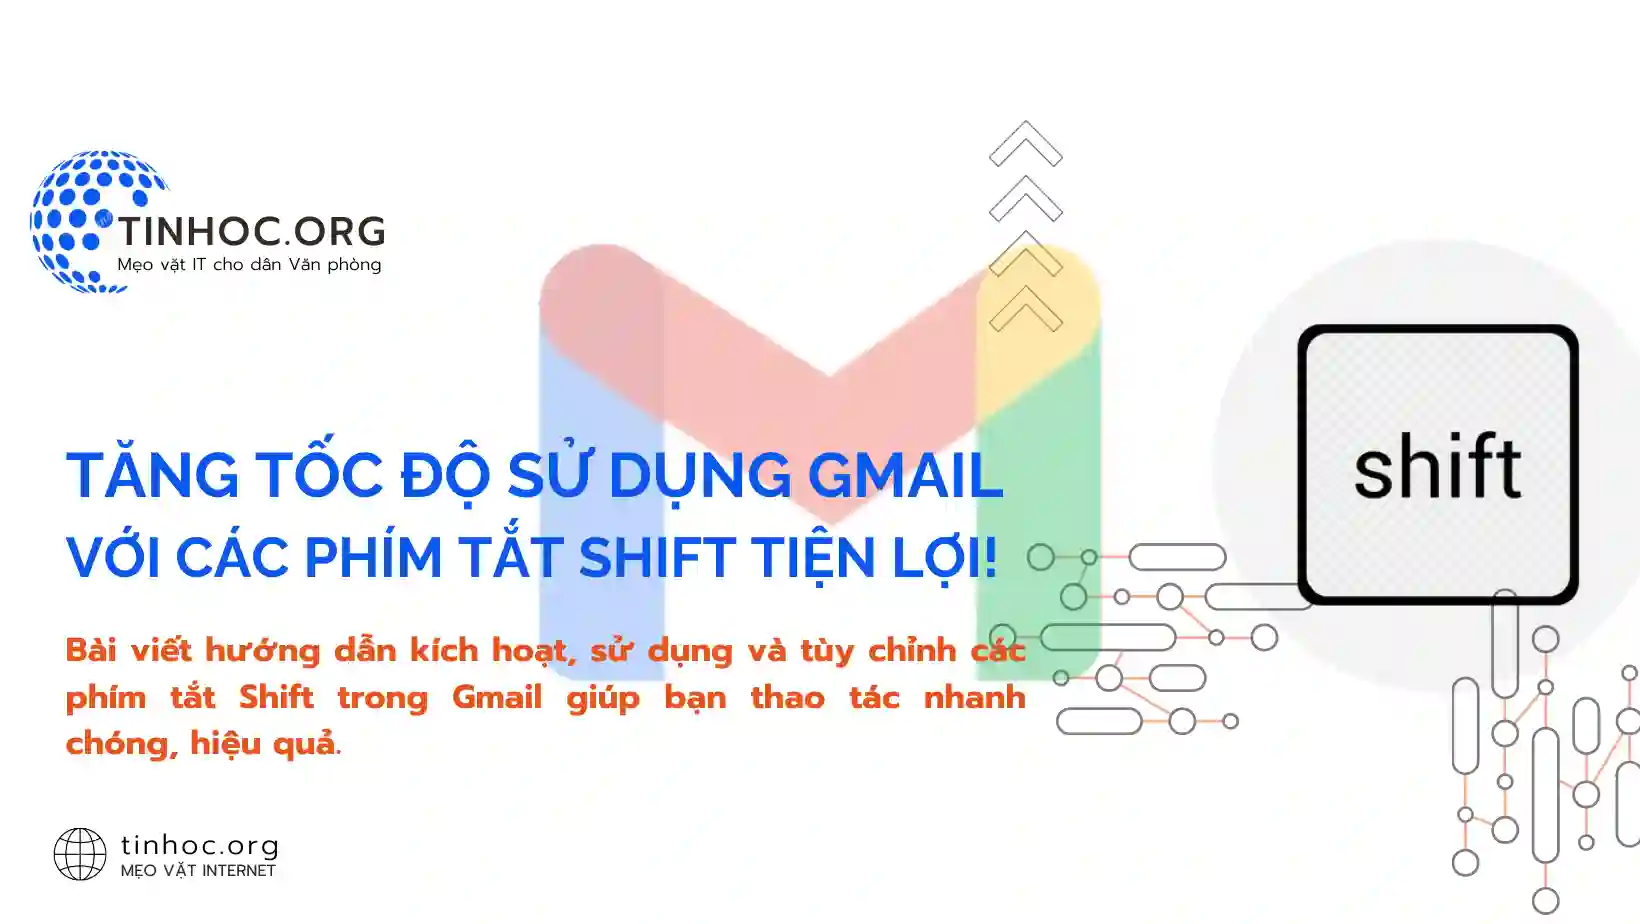 Tăng tốc độ sử dụng Gmail với các phím tắt Shift tiện lợi!